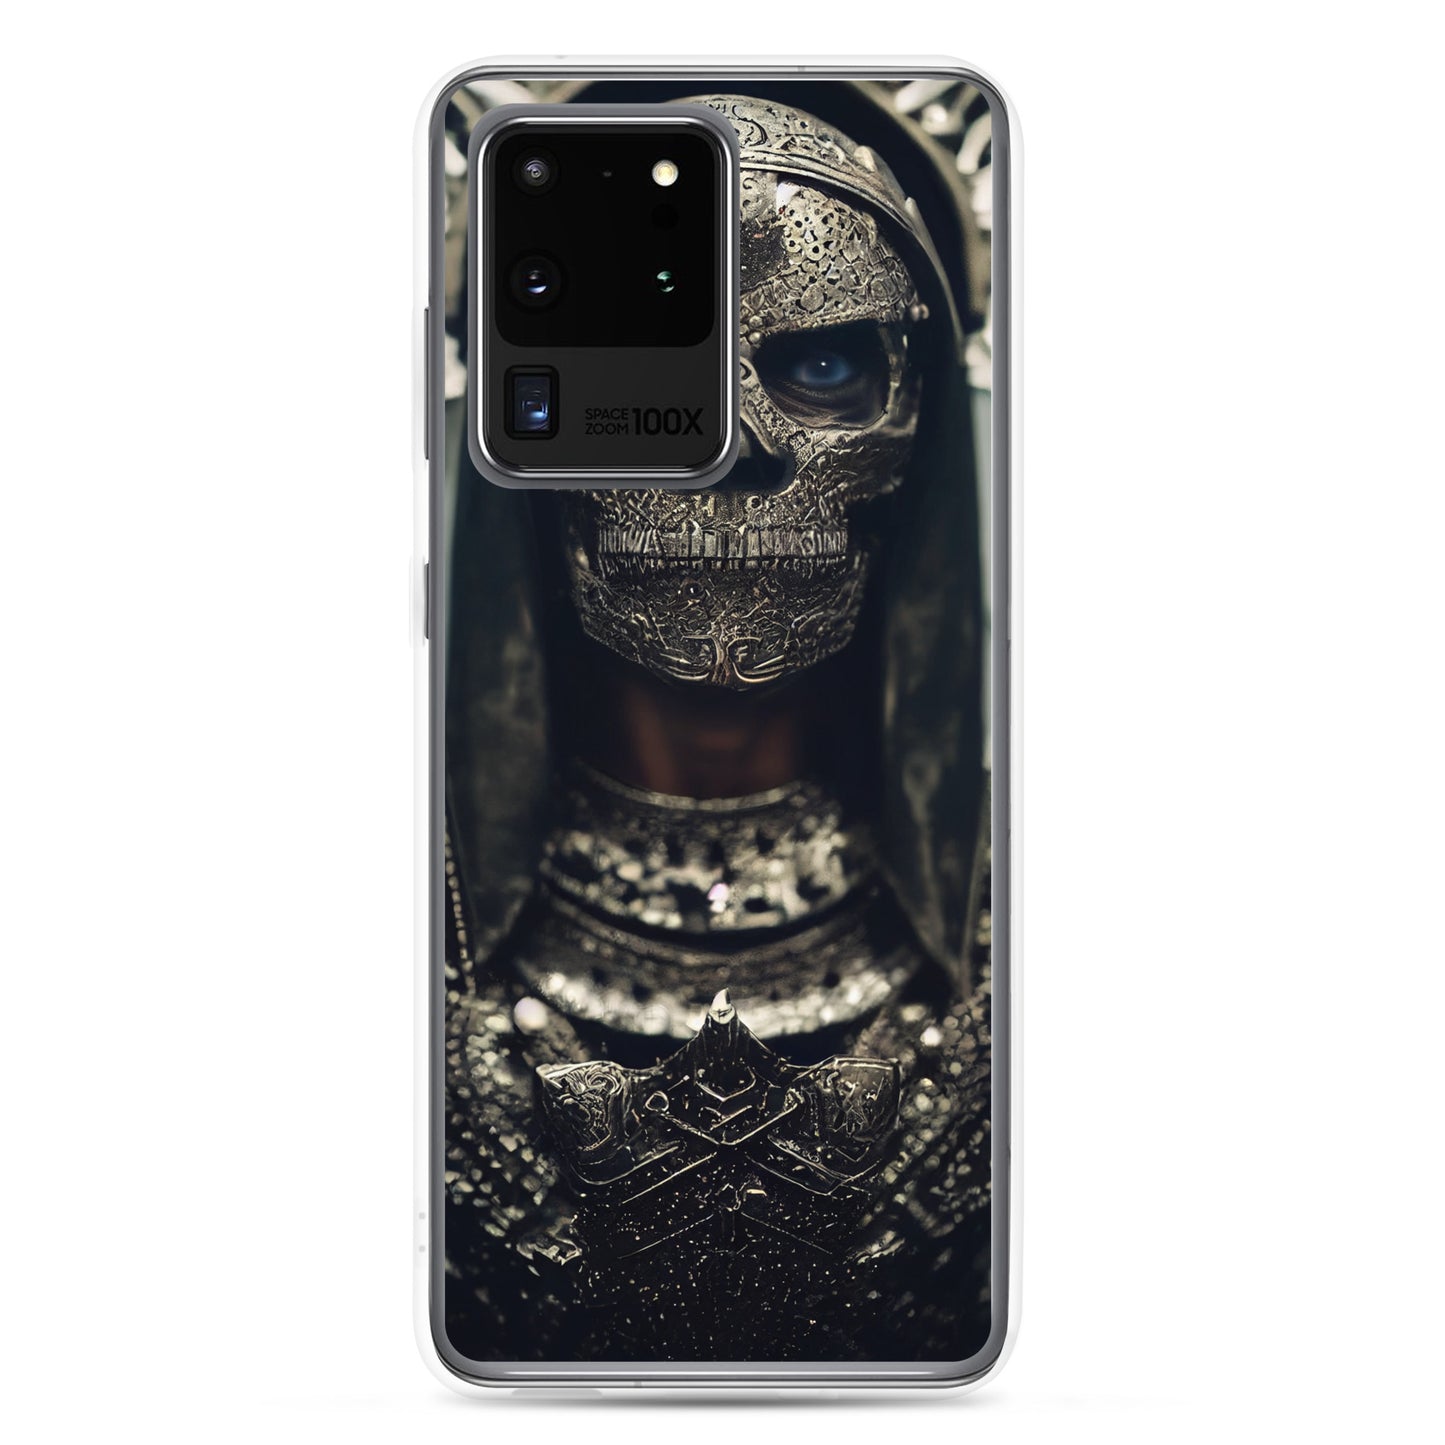 Samsung Case - Metal Skull Armor